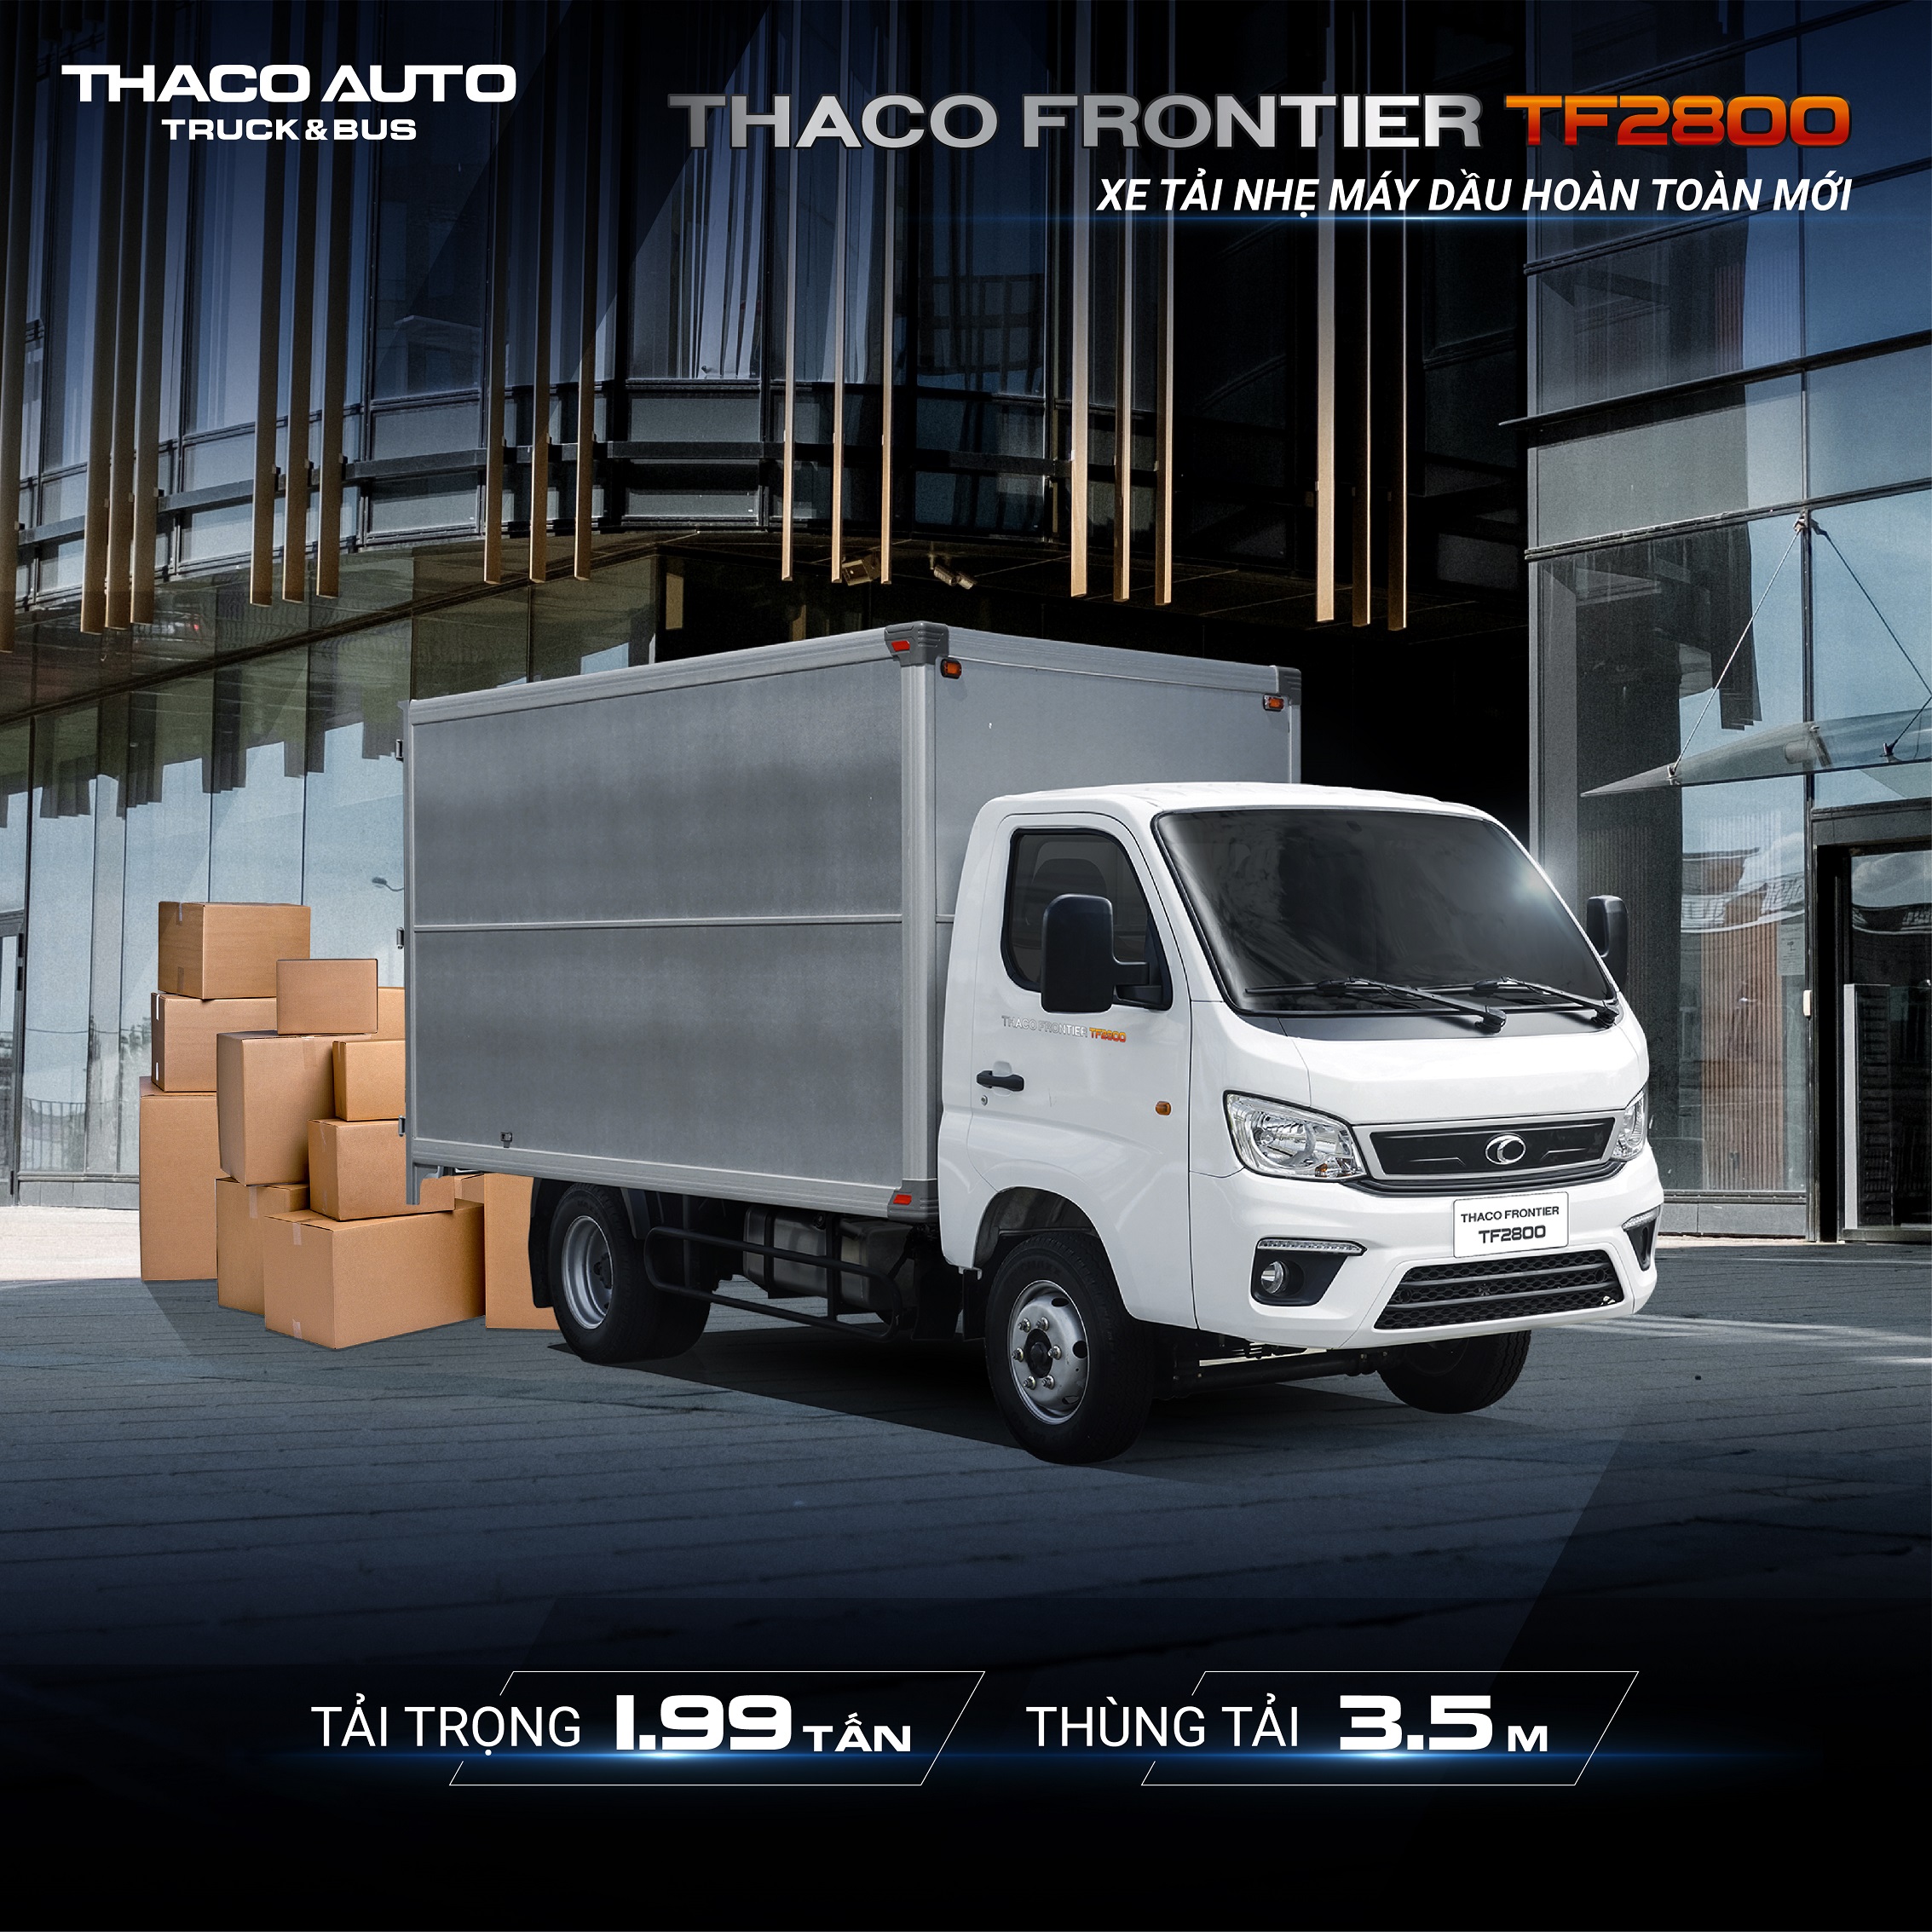 Thaco Frontier TF2800 – Xe tải nhẹ máy dầu hoàn toàn mới post-fb-t6-thaco-frontier-tf2800-01.jpg